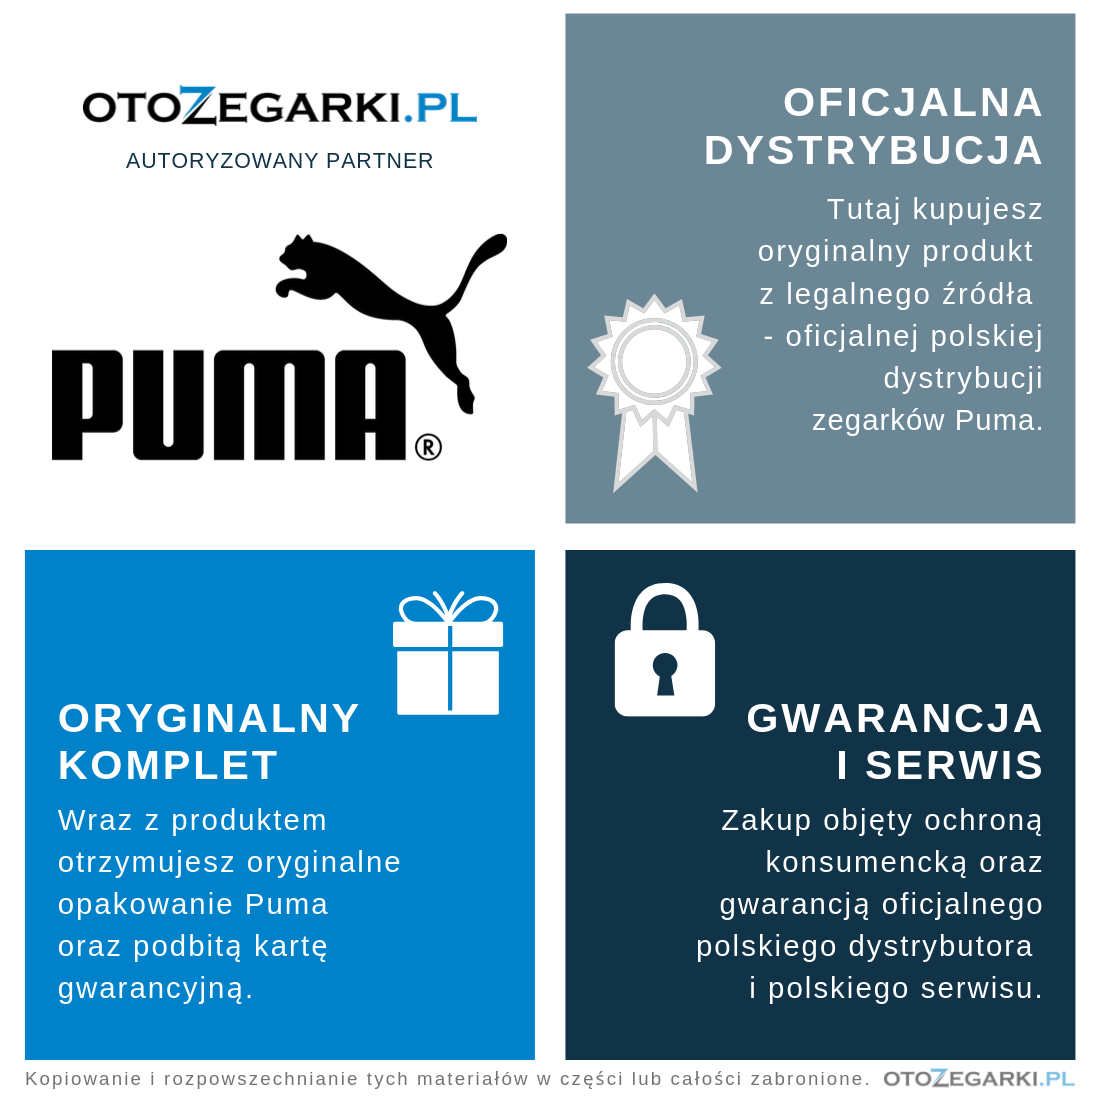 Zegarek męski Puma Reset P5009 - 224,00 zł - Otozegarki.pl